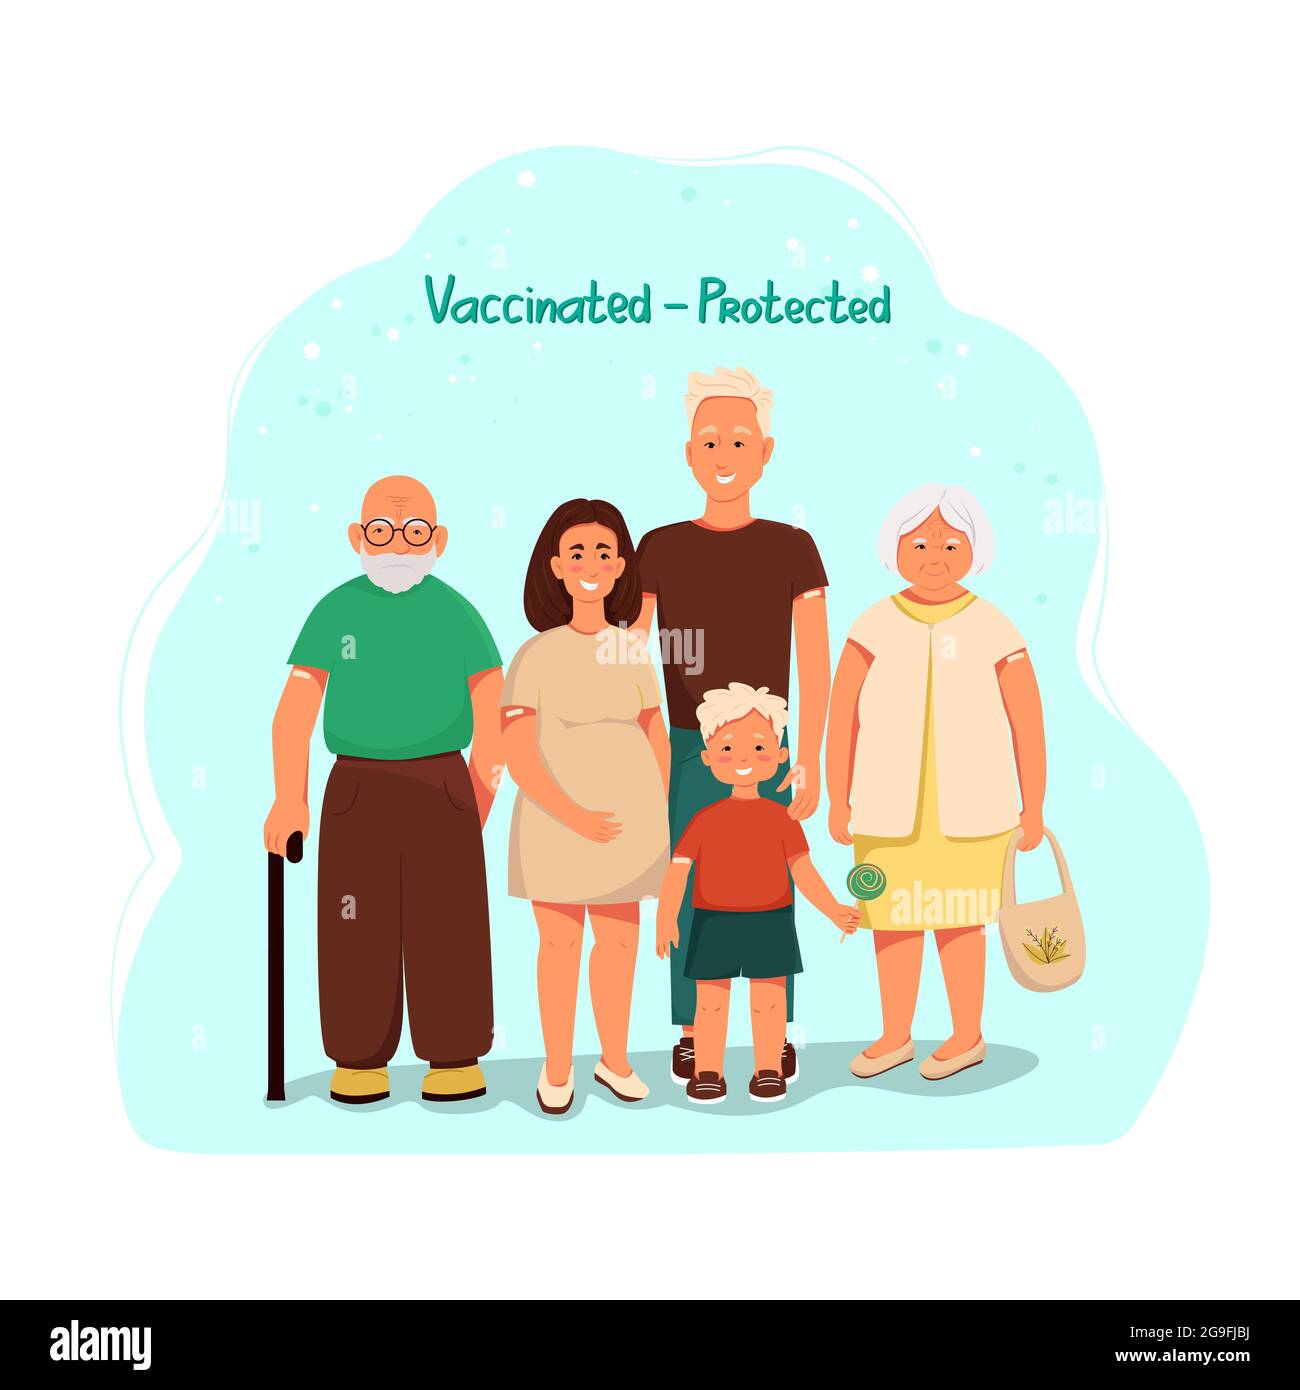 Familie nach der Impfung, geimpft - geschützt. Vektorgrafik Zeichentrickfiguren. Flache Abbildung Stock Vektor